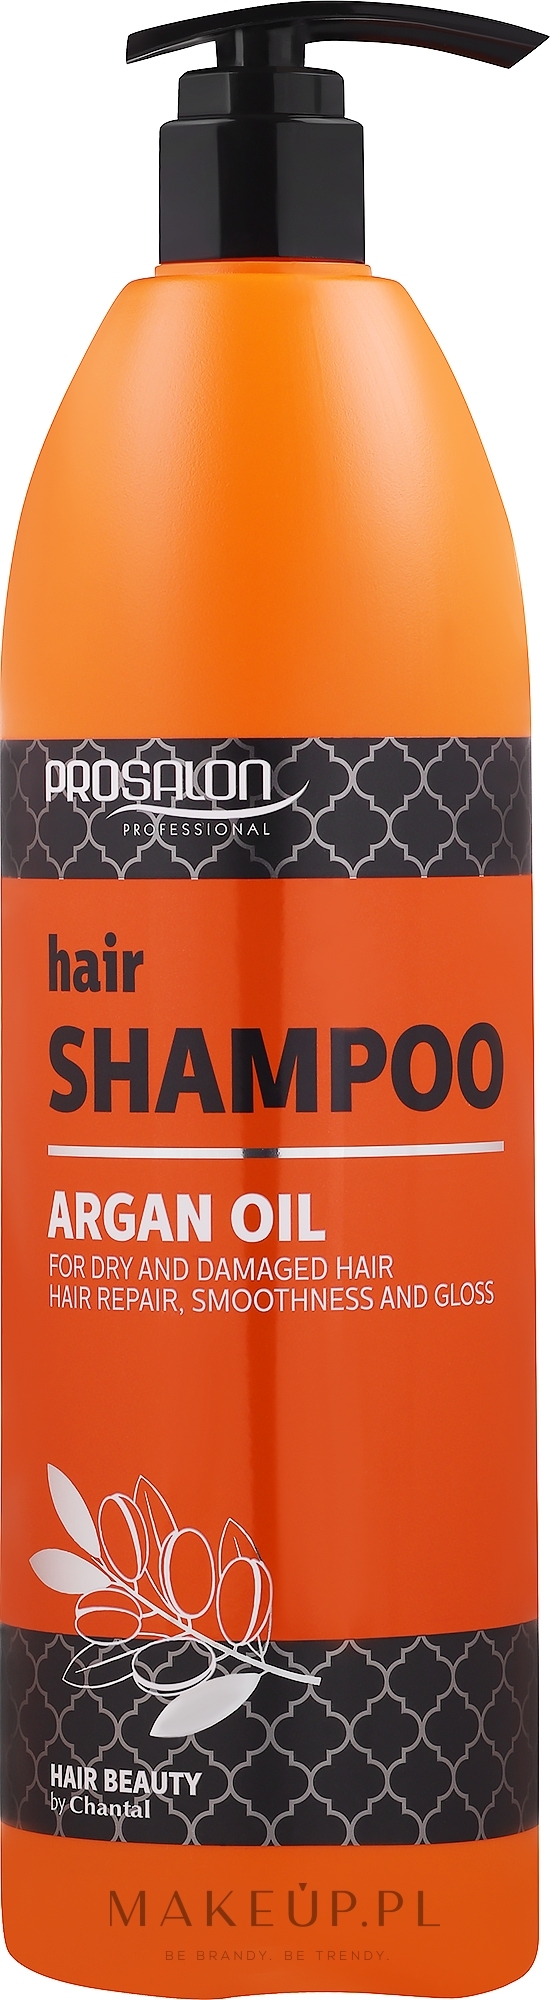 argan oil prosalon szampon wizaz